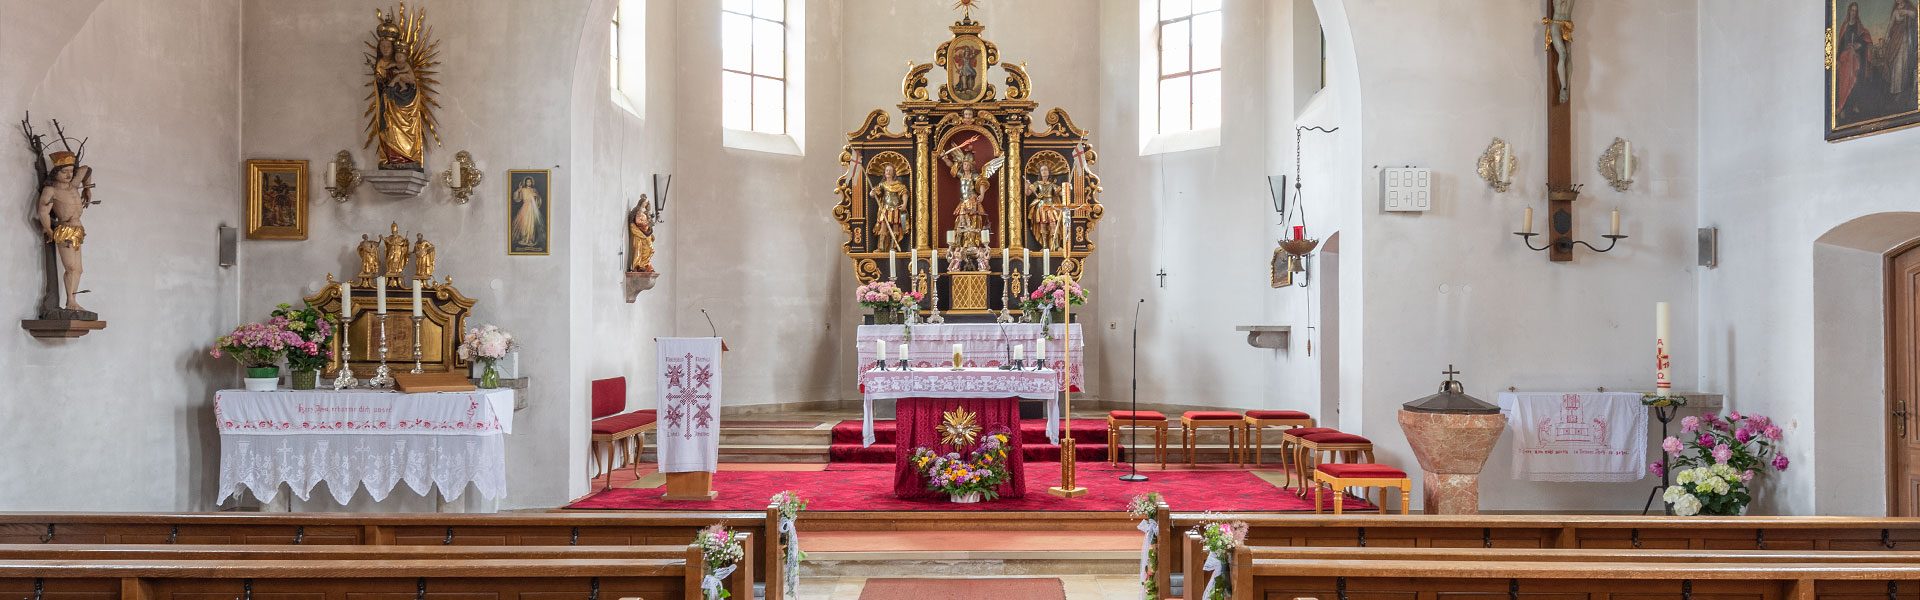 Altar Pfarrkirche St. Michael Rottau